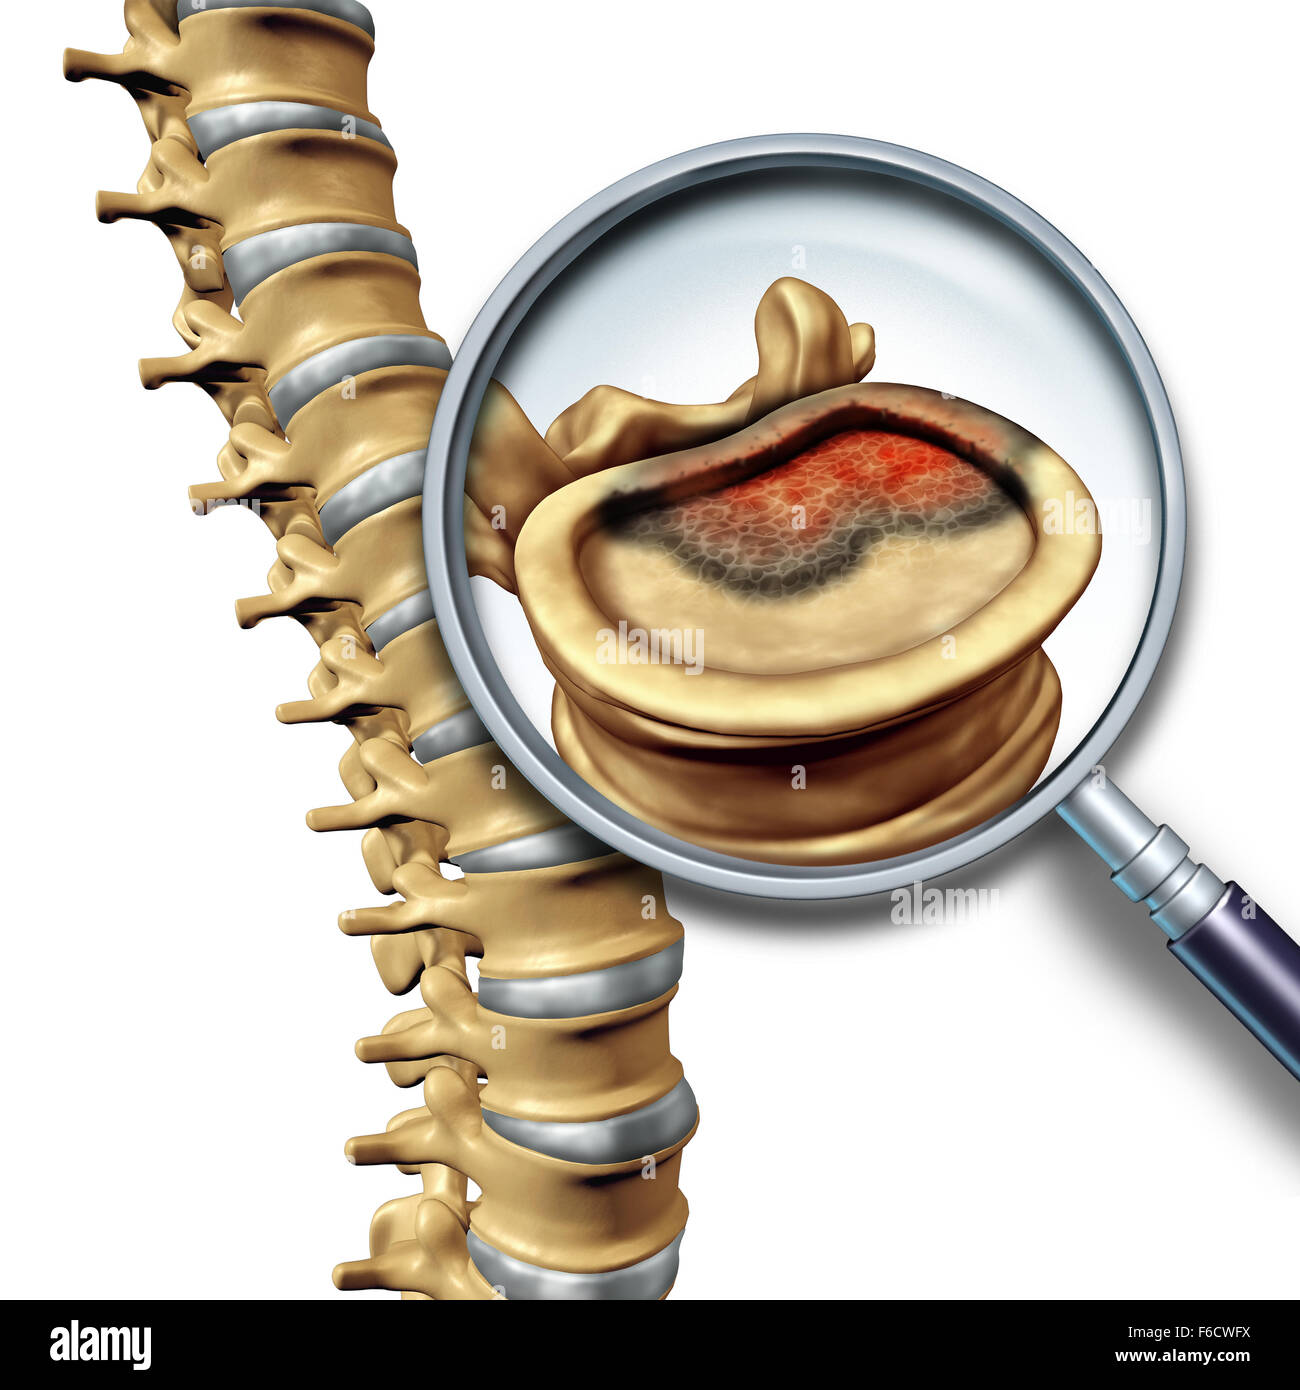 La colonna vertebrale e cancro tumore spinale malattia concetto medico come scheletro di vertebra con una lente di ingrandimento close up di un vertabrate con una crescita cancerosa. Foto Stock